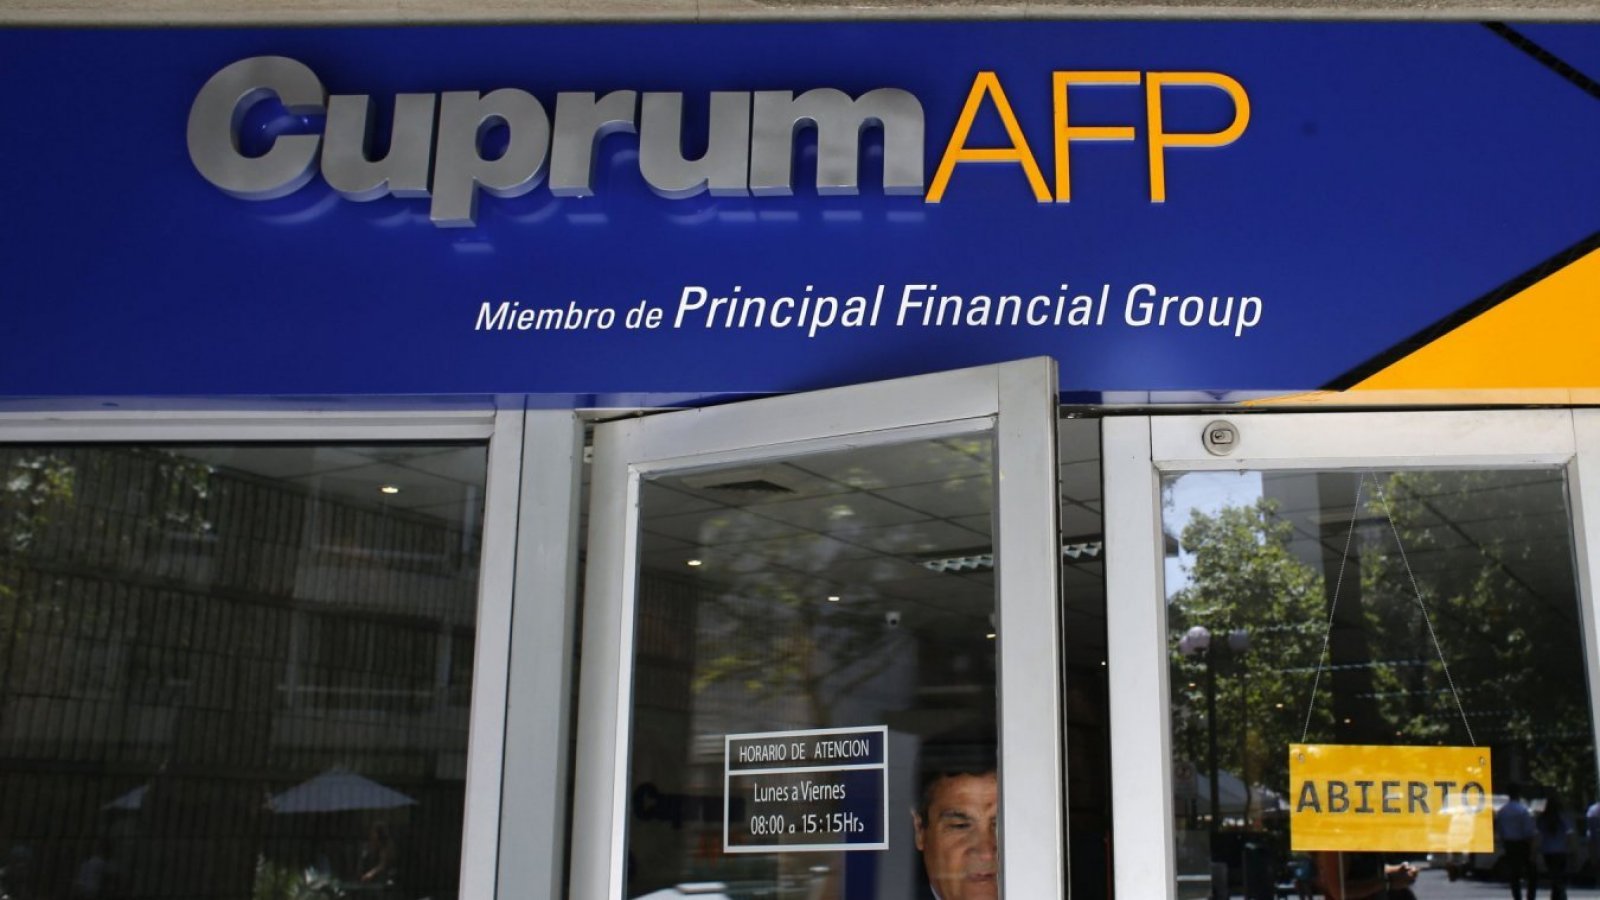 Diputados piden fiscalizar a AFP Cuprum por envío de correos a sus afiliados en contra de la reforma previsional